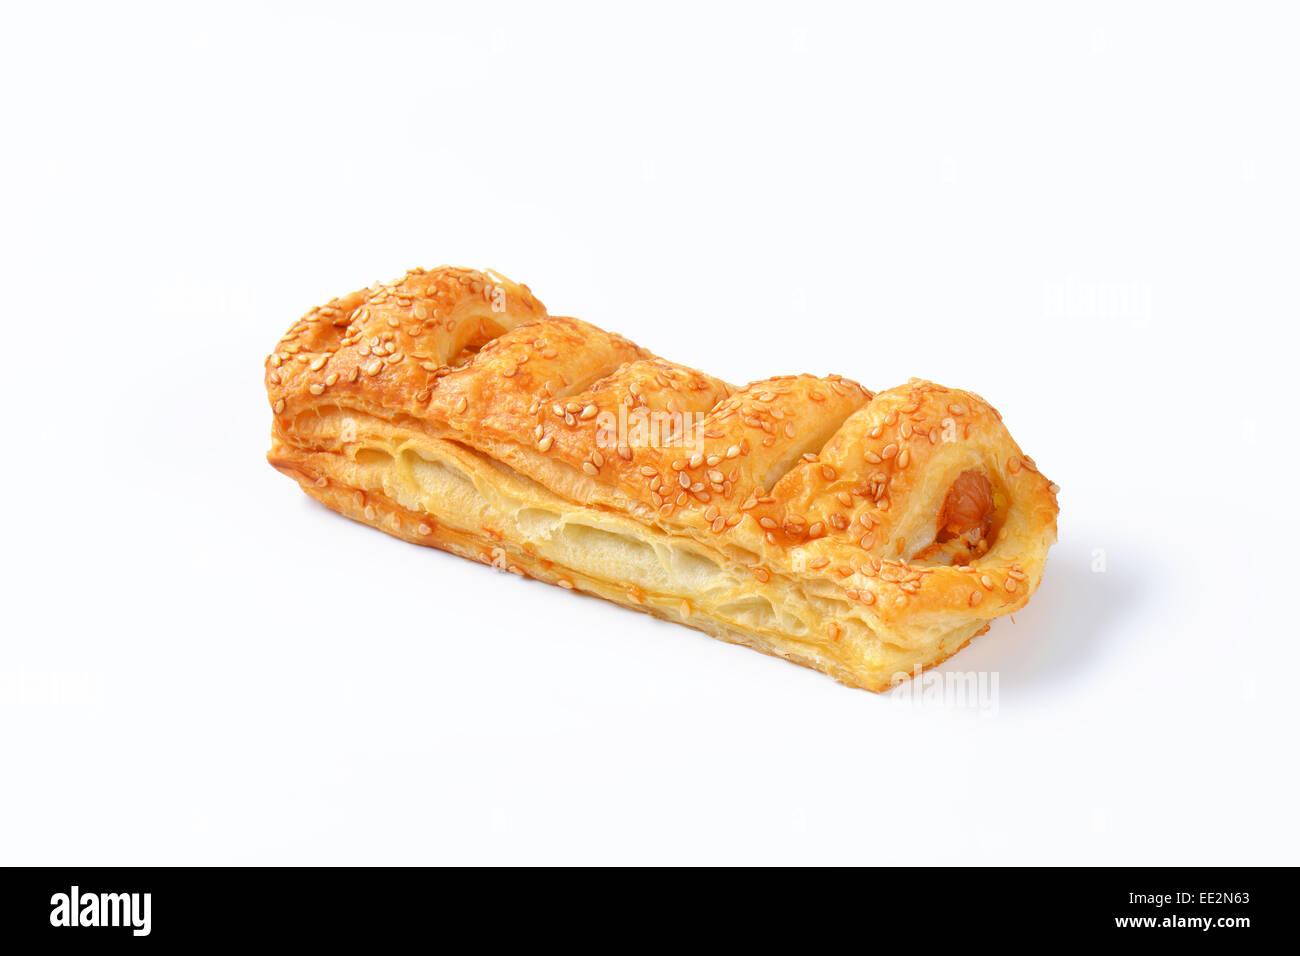 Sausage roll - savoury pastry snack Stock Photo